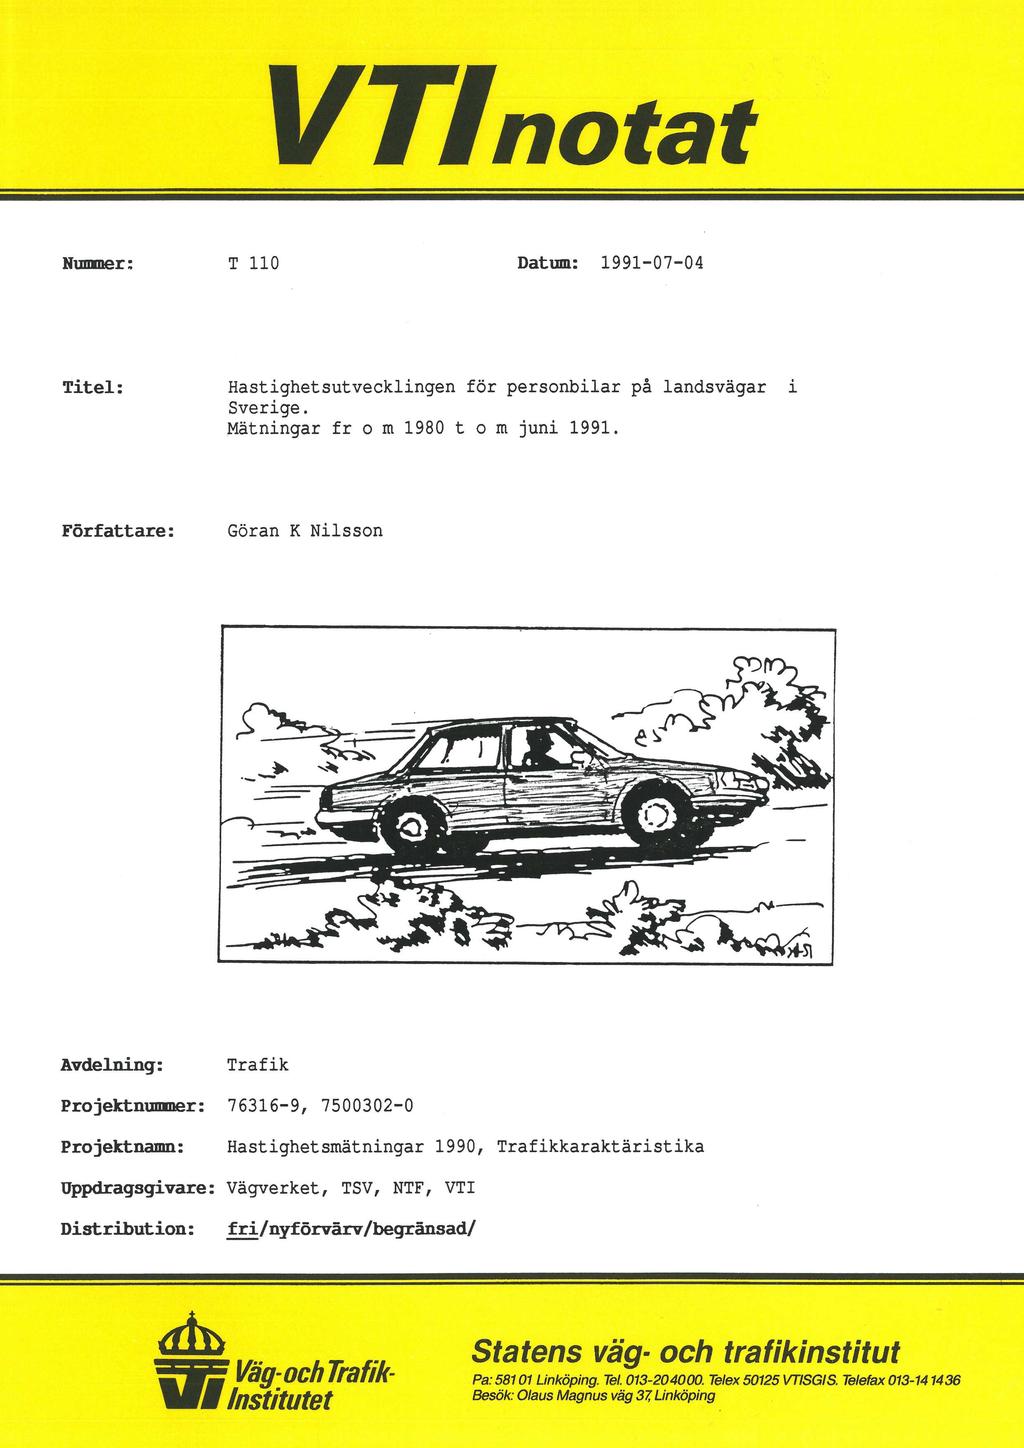 VTlnotat Hummer: T 110 Datum: 1991-07-04 Titel: Hastighetsutvecklingen för personbilar på landsvägar i Sverige. Mätningar fr 0 m 1980 t 0 m juni 1991.